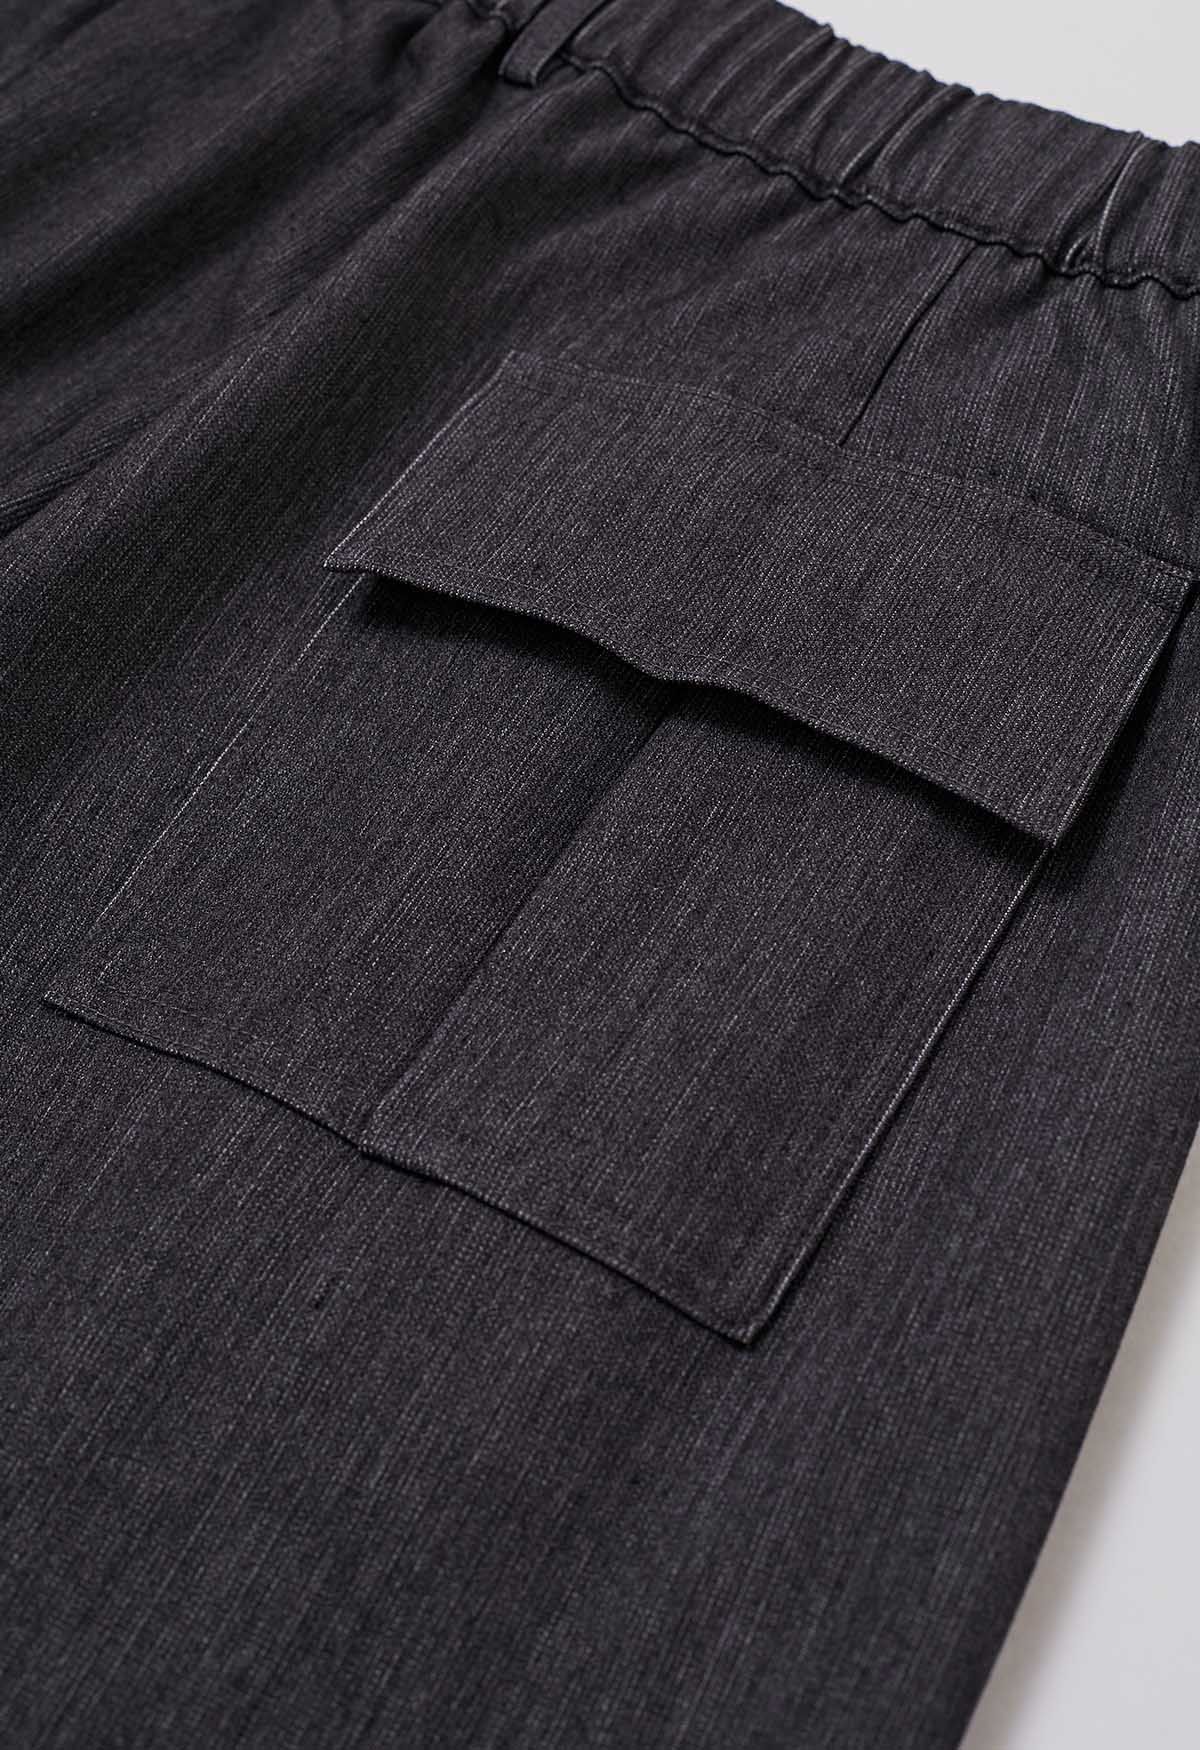 Pantalones anchos plisados cómodos a medida en gris